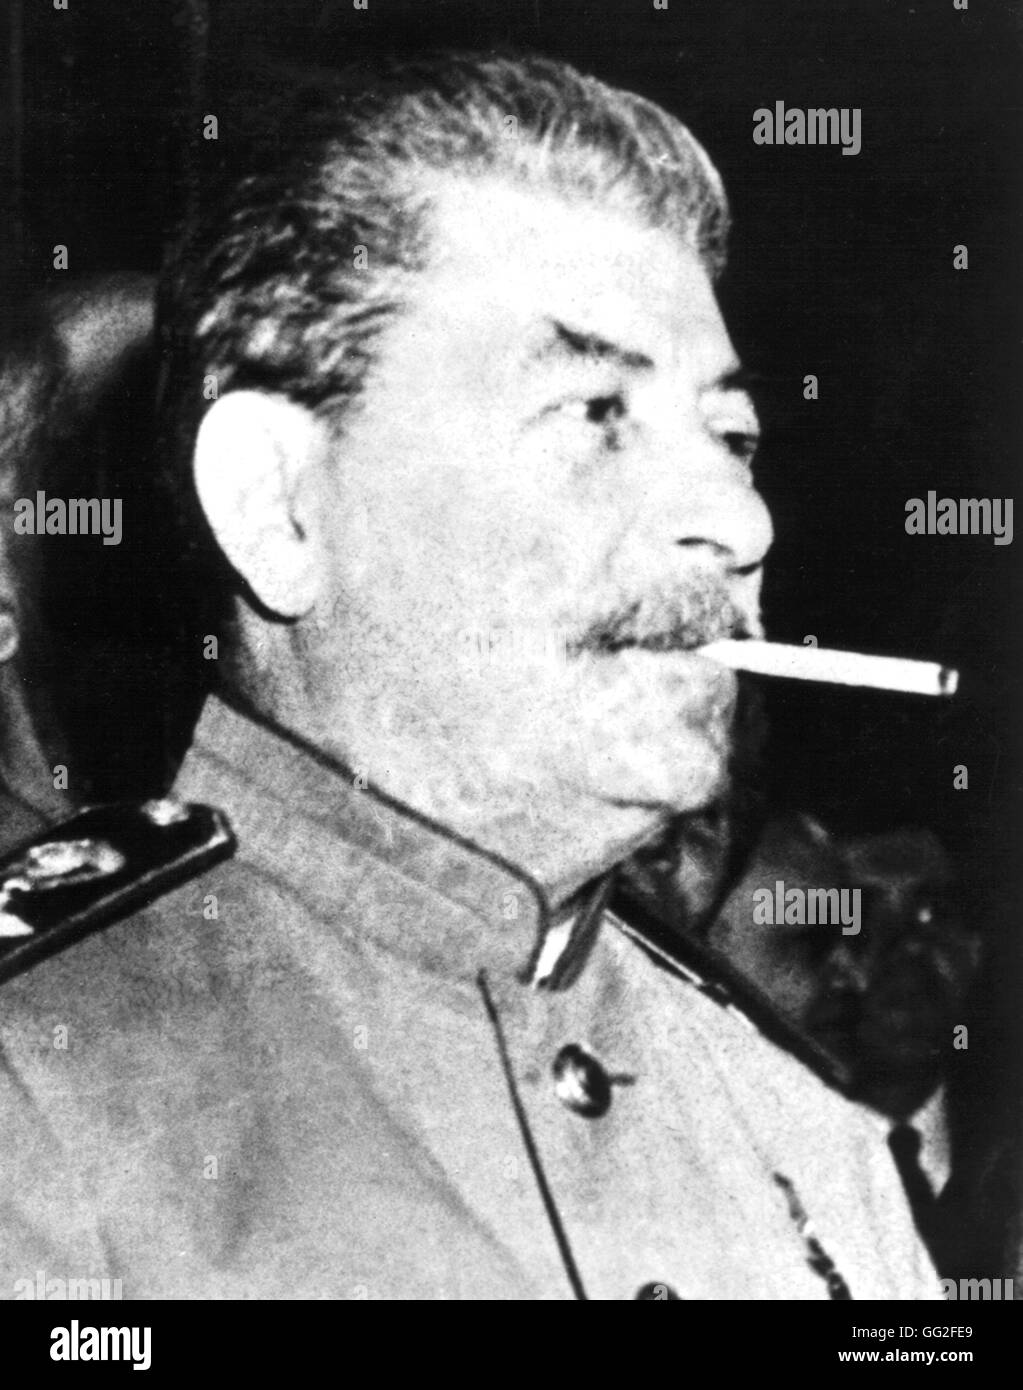 Portrait de Joseph Staline URSS 20e siècle Banque D'Images